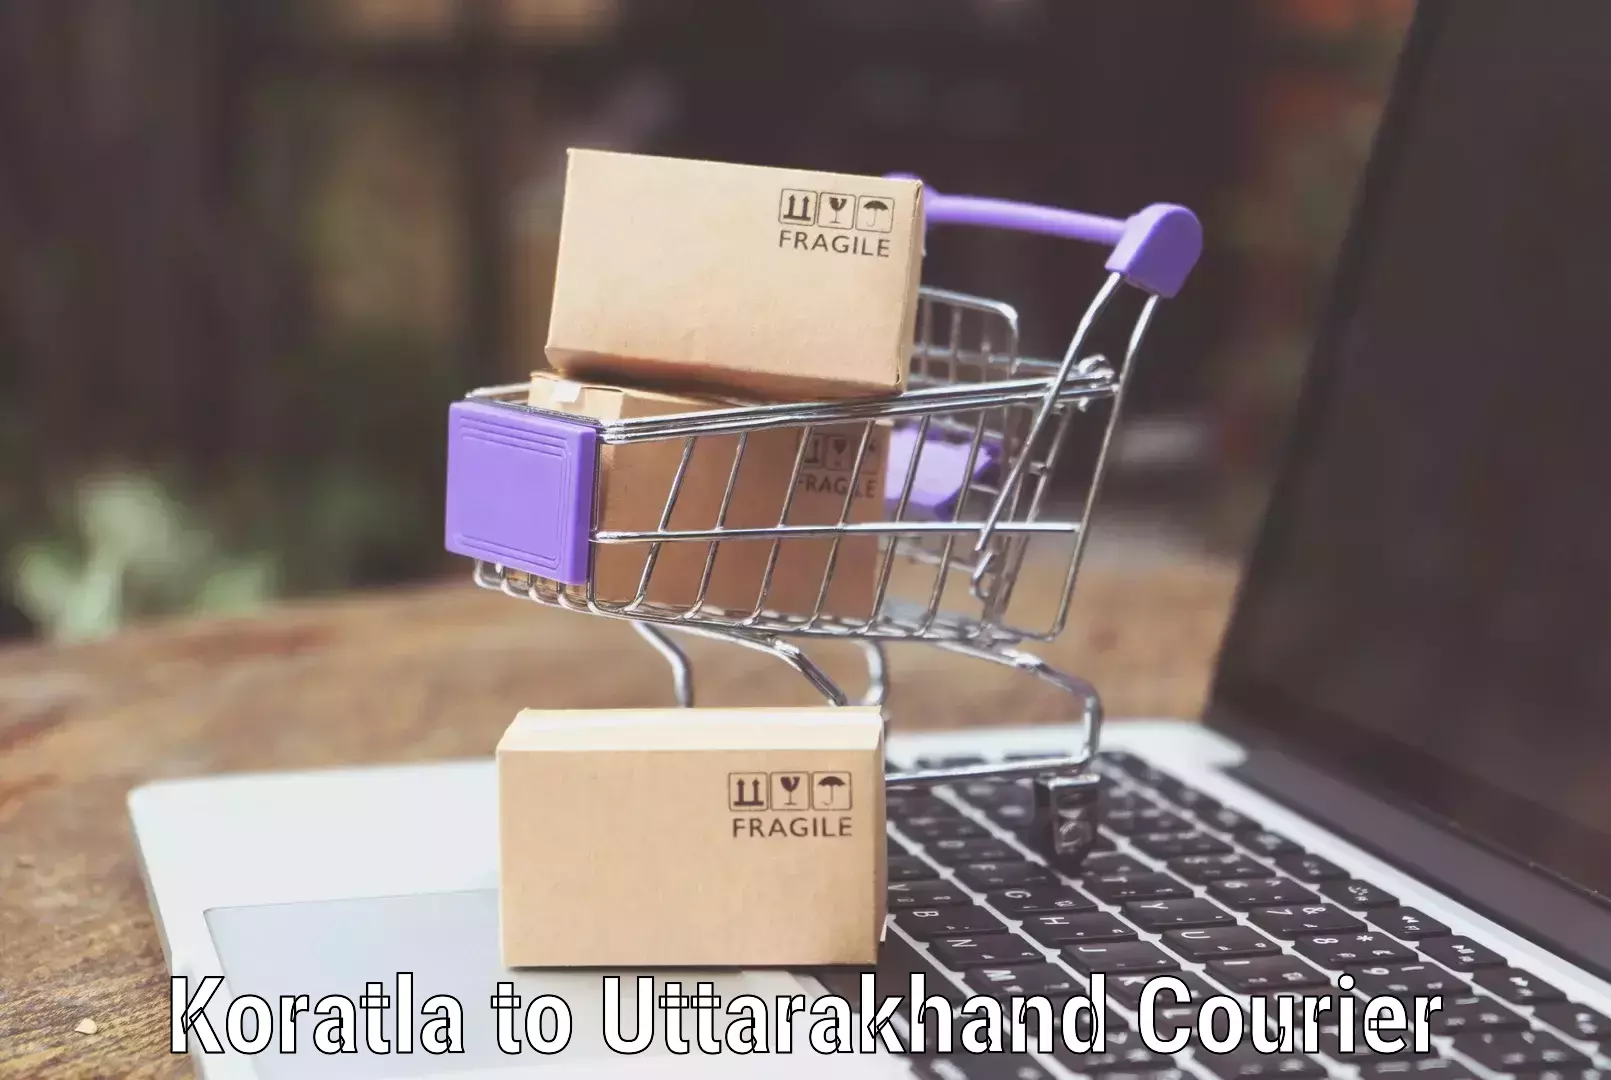 Personalized luggage shipping in Koratla to Uttarkashi